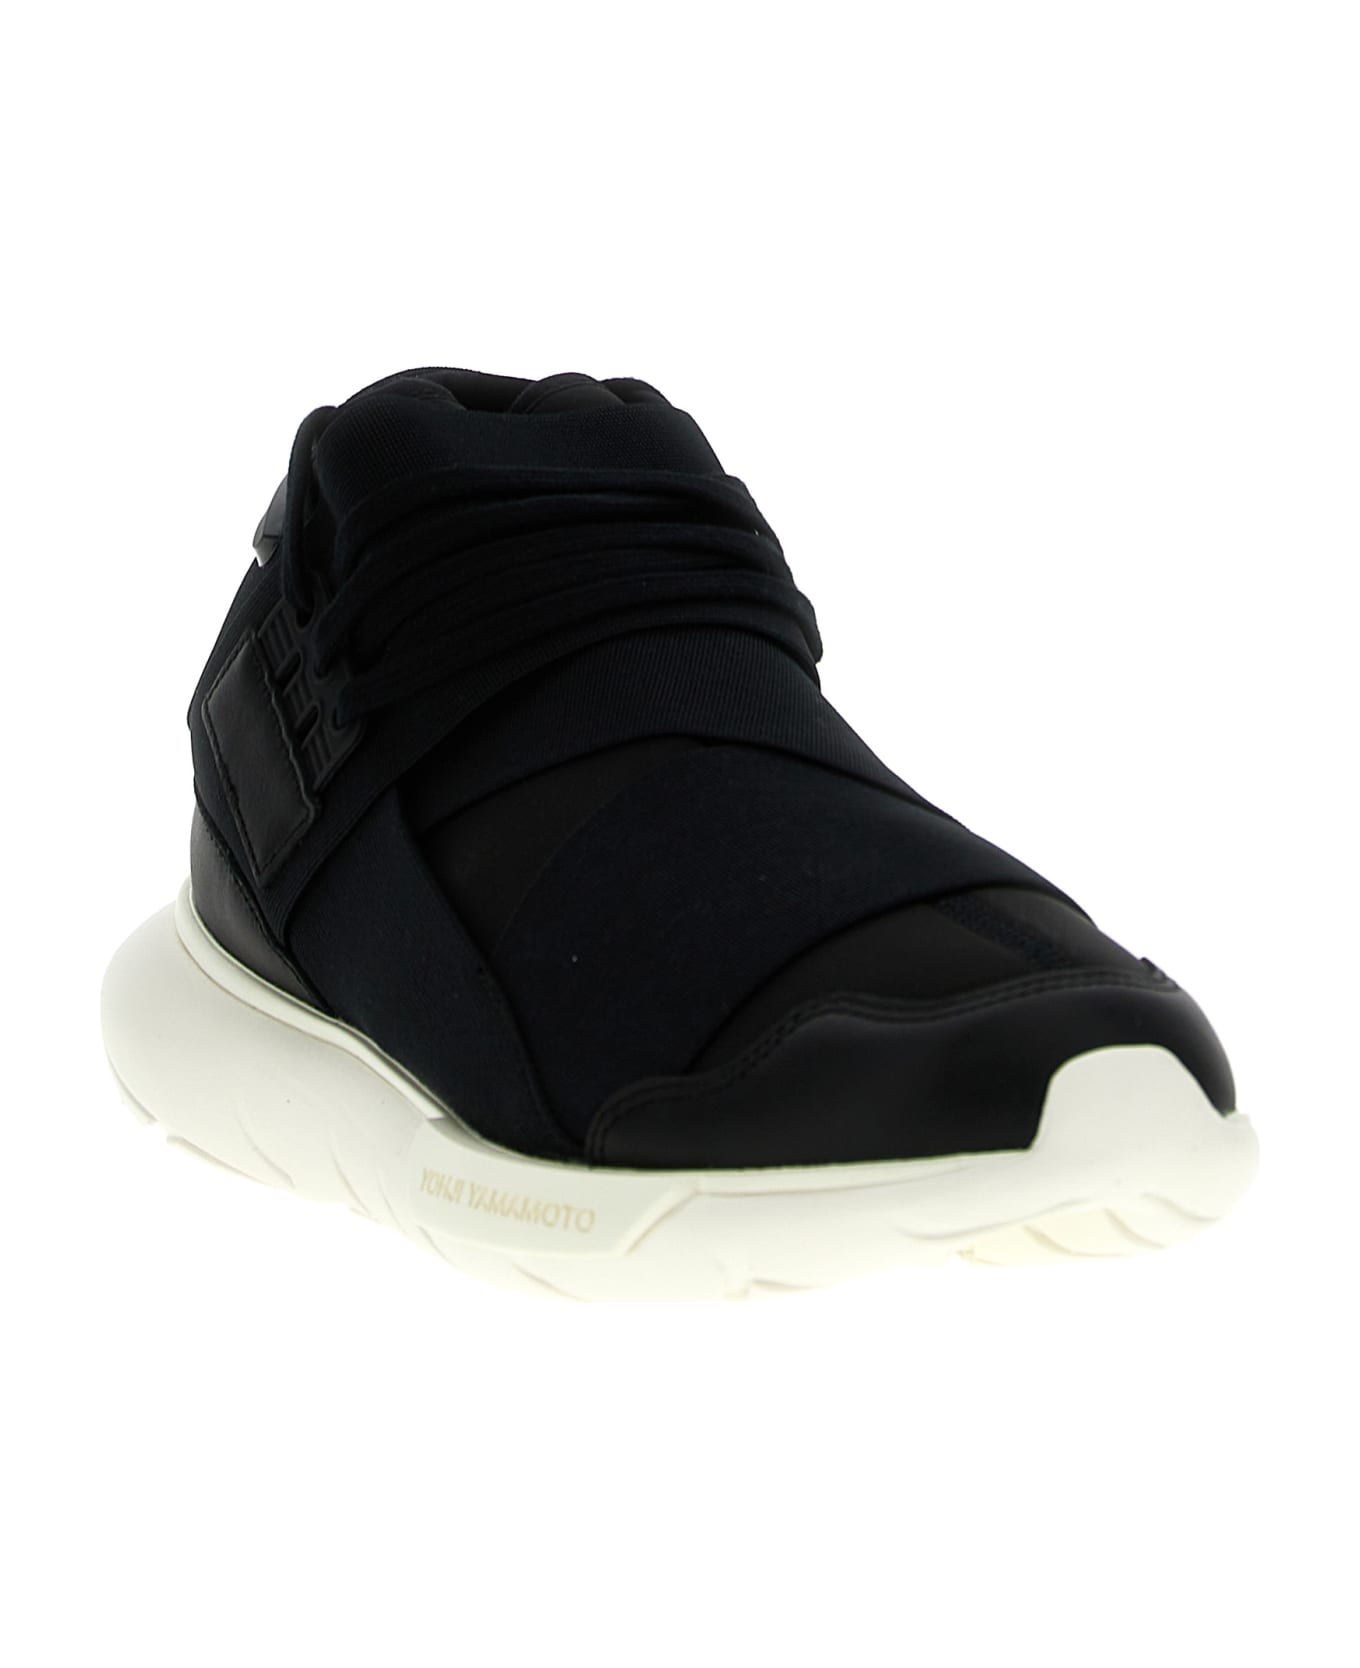 Y-3 'qasa' Sneakers - White/Black スニーカー